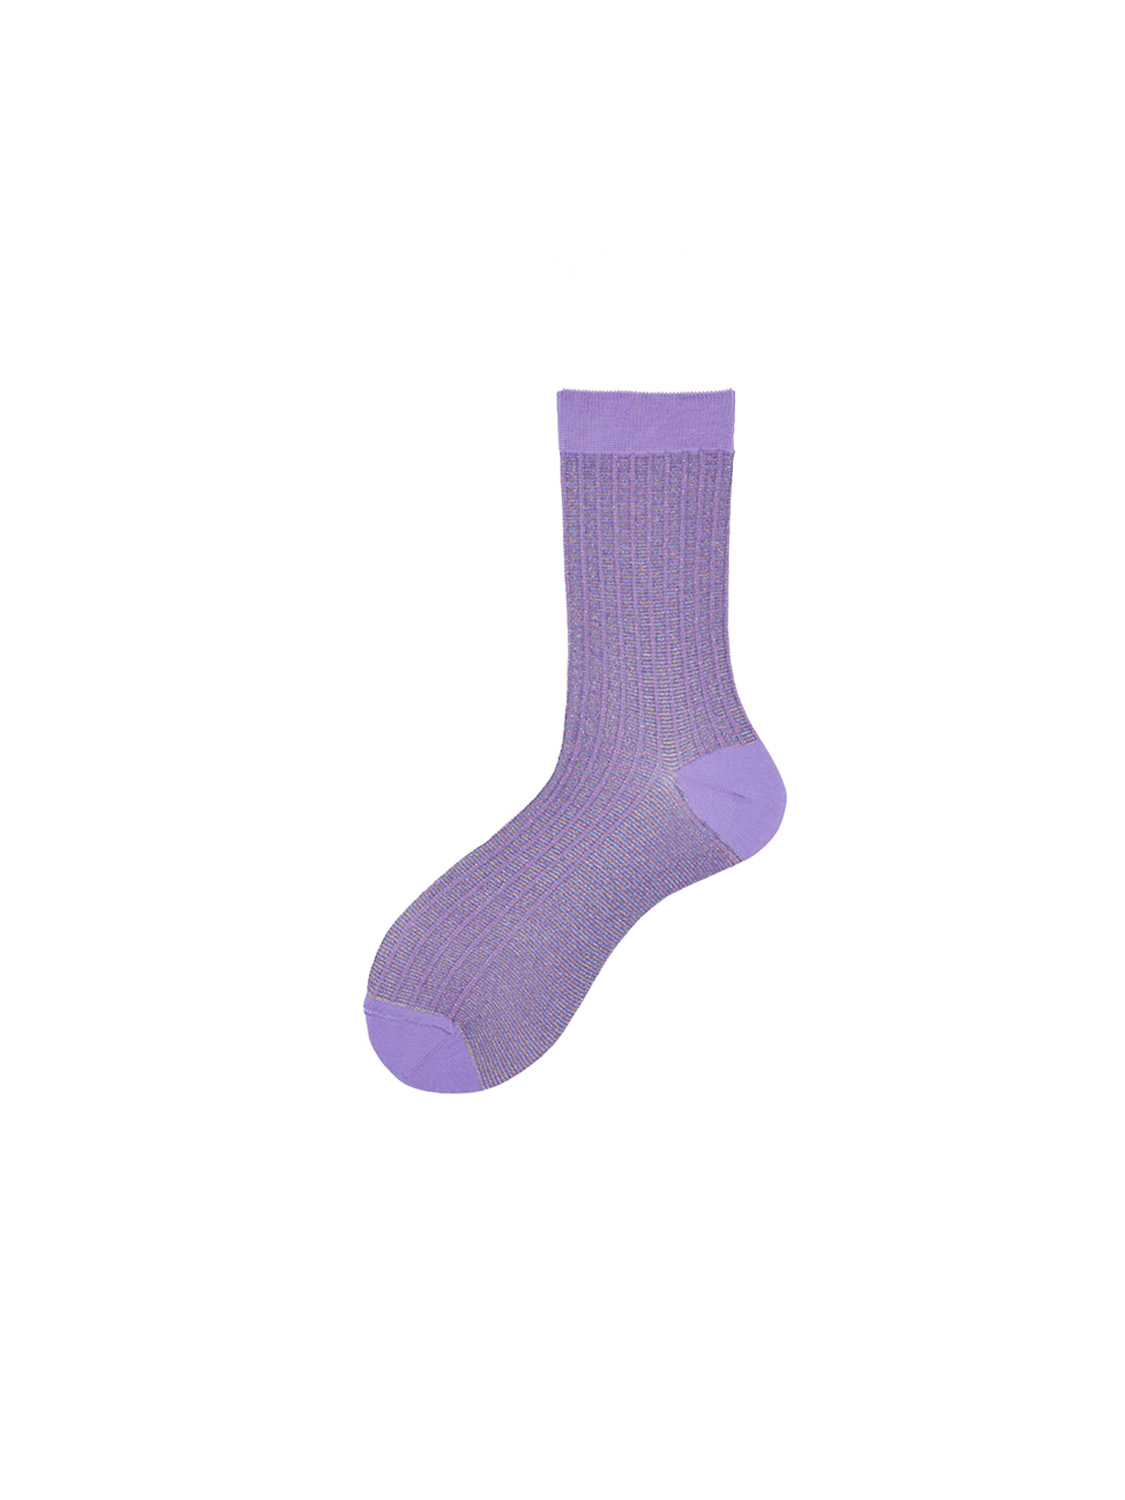 Alto Leona Donna socks with lurex effects  lila One Size